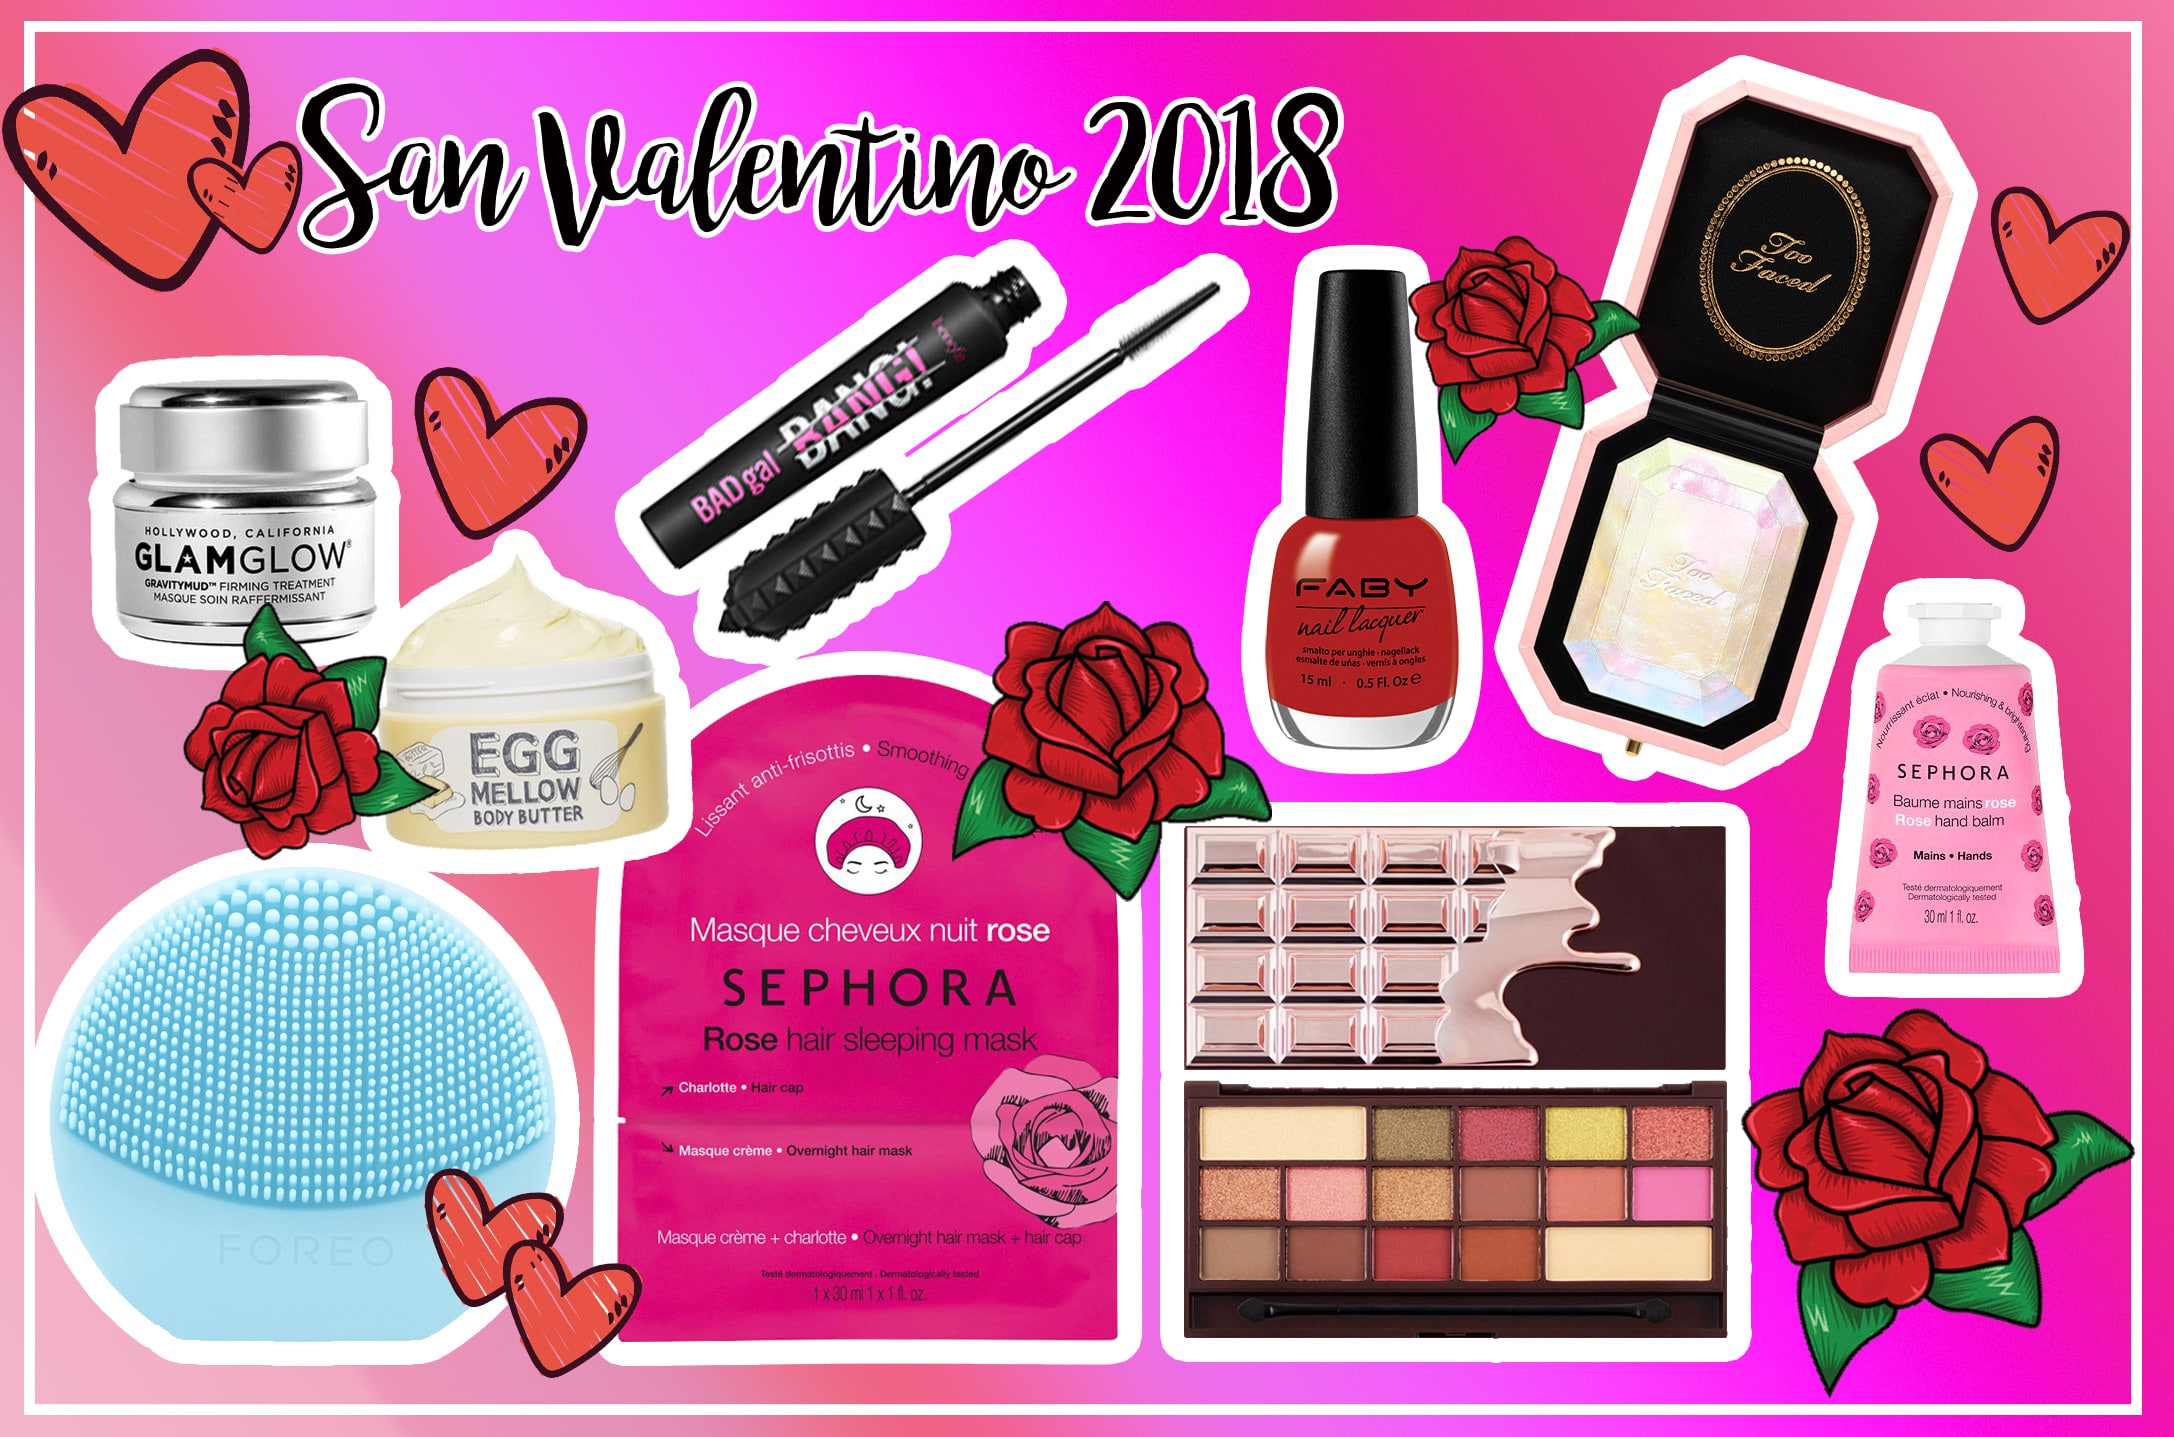 San Valentino 2018, idee regalo beauty e make up, prezzi e consigli